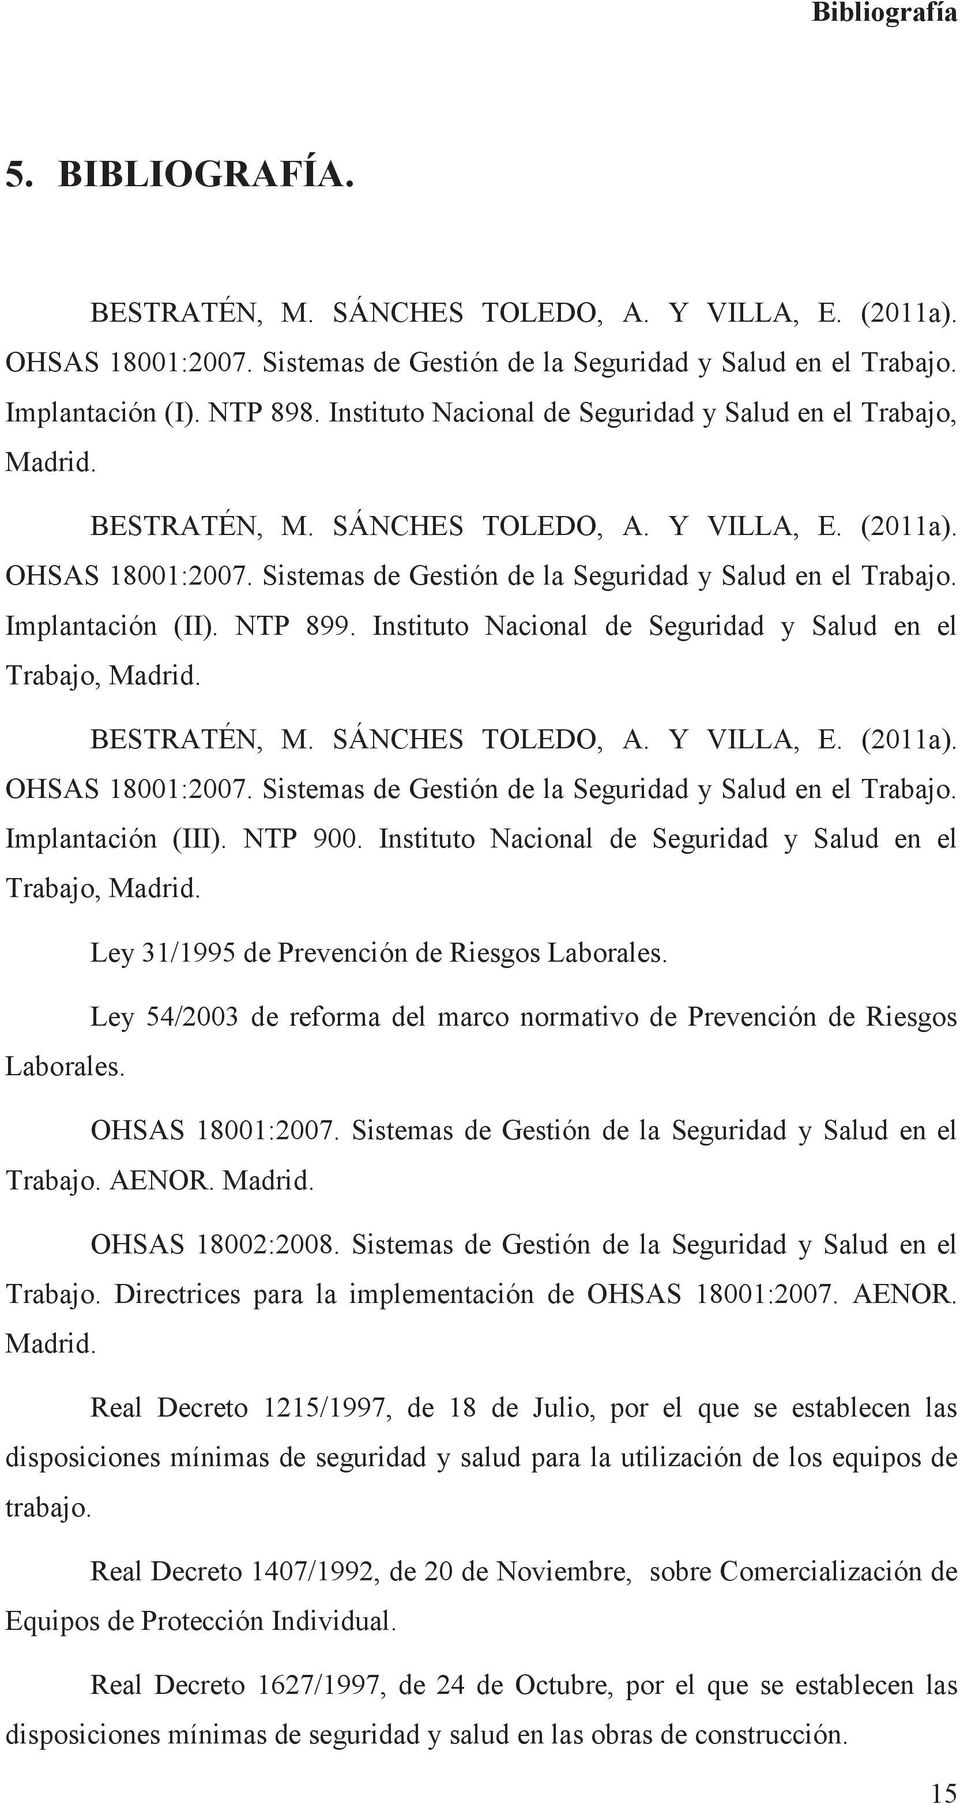 Implantación (II). NTP 899.  Implantación (III). NTP 900. Instituto Nacional de Seguridad y Salud en el Trabajo, Madrid. Ley 31/1995 de Prevención de Riesgos Laborales.